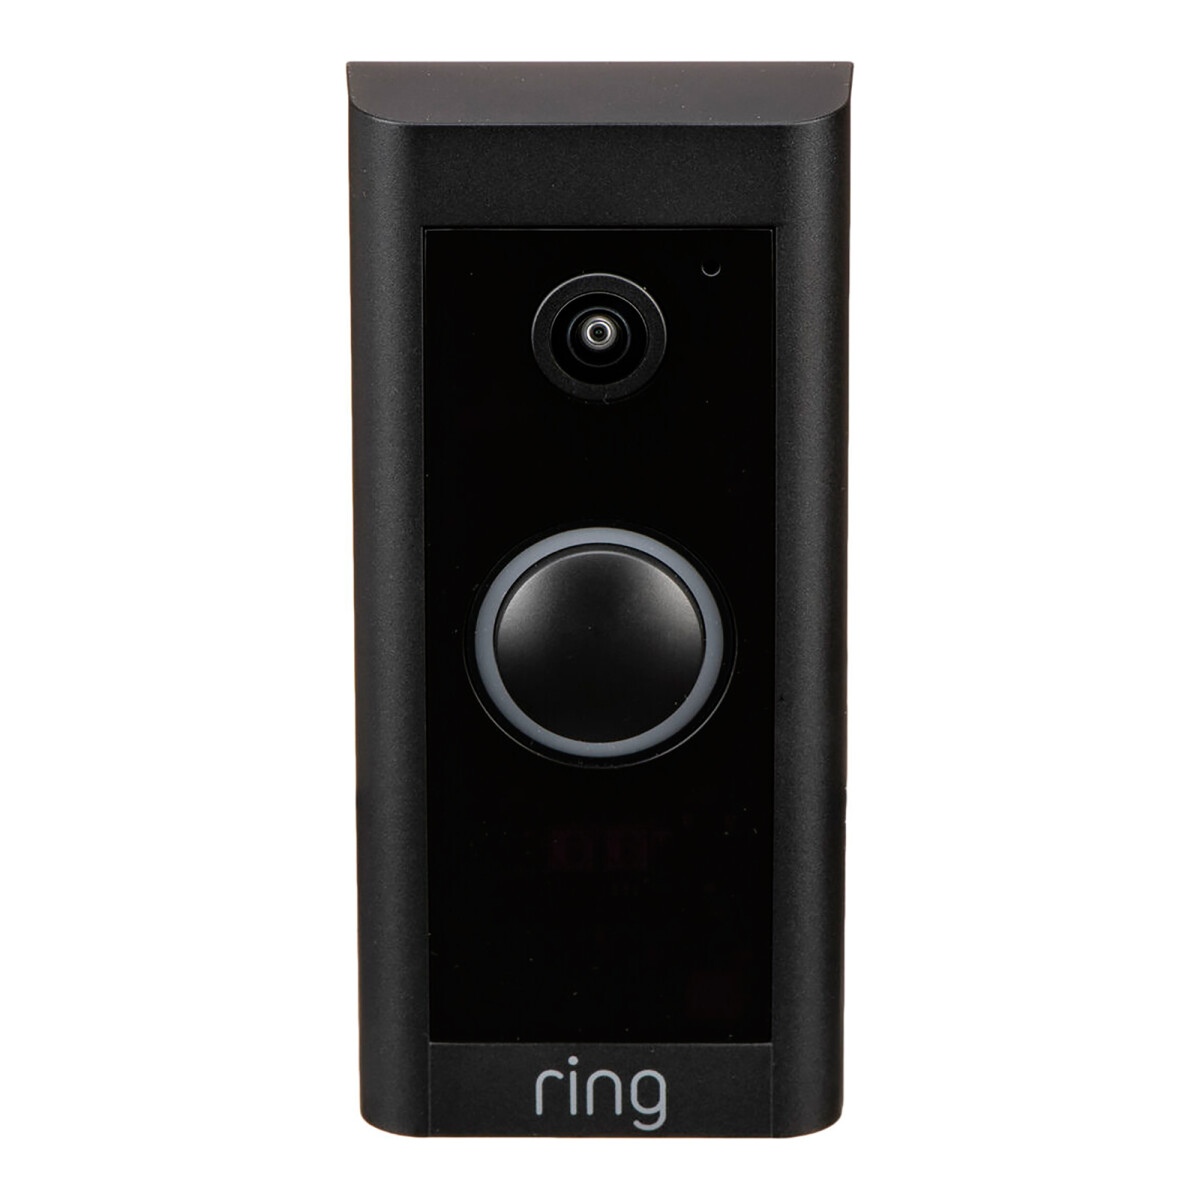 Ring - Timbre con Cámara Video Doorbell Wired B08CKHPP52 - 1080P. Visión Nocturna. Sensor de Movimie - 001 